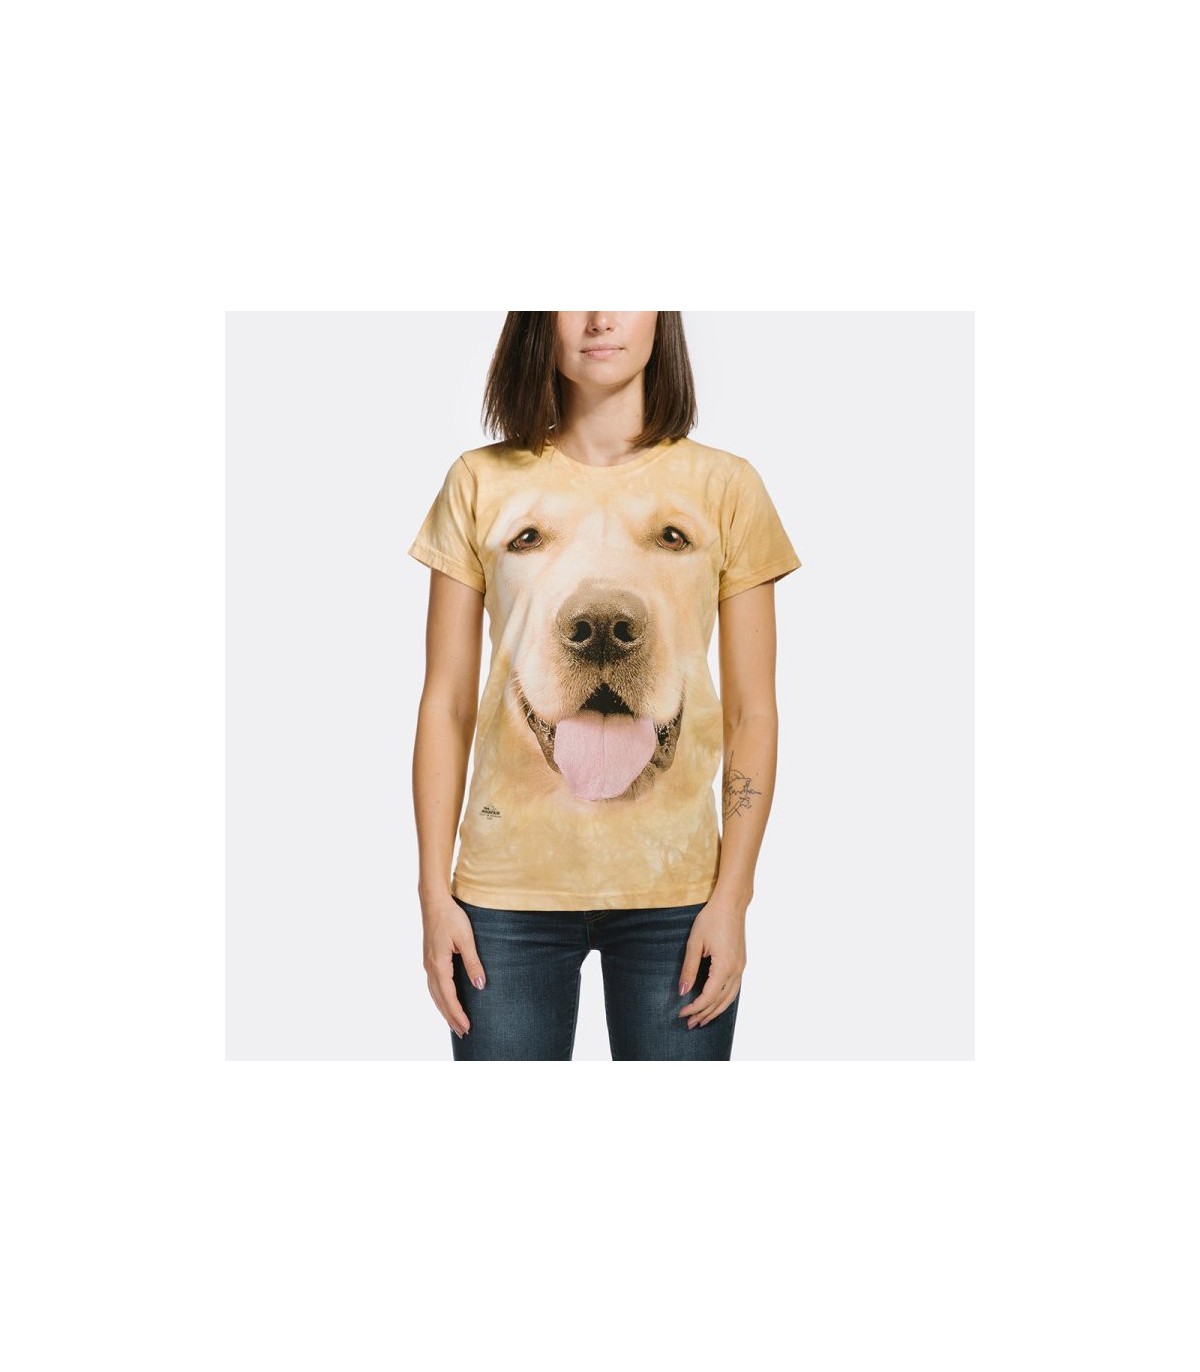 The Mountain Big Face Golden Ladies Pet Dog T Shirt